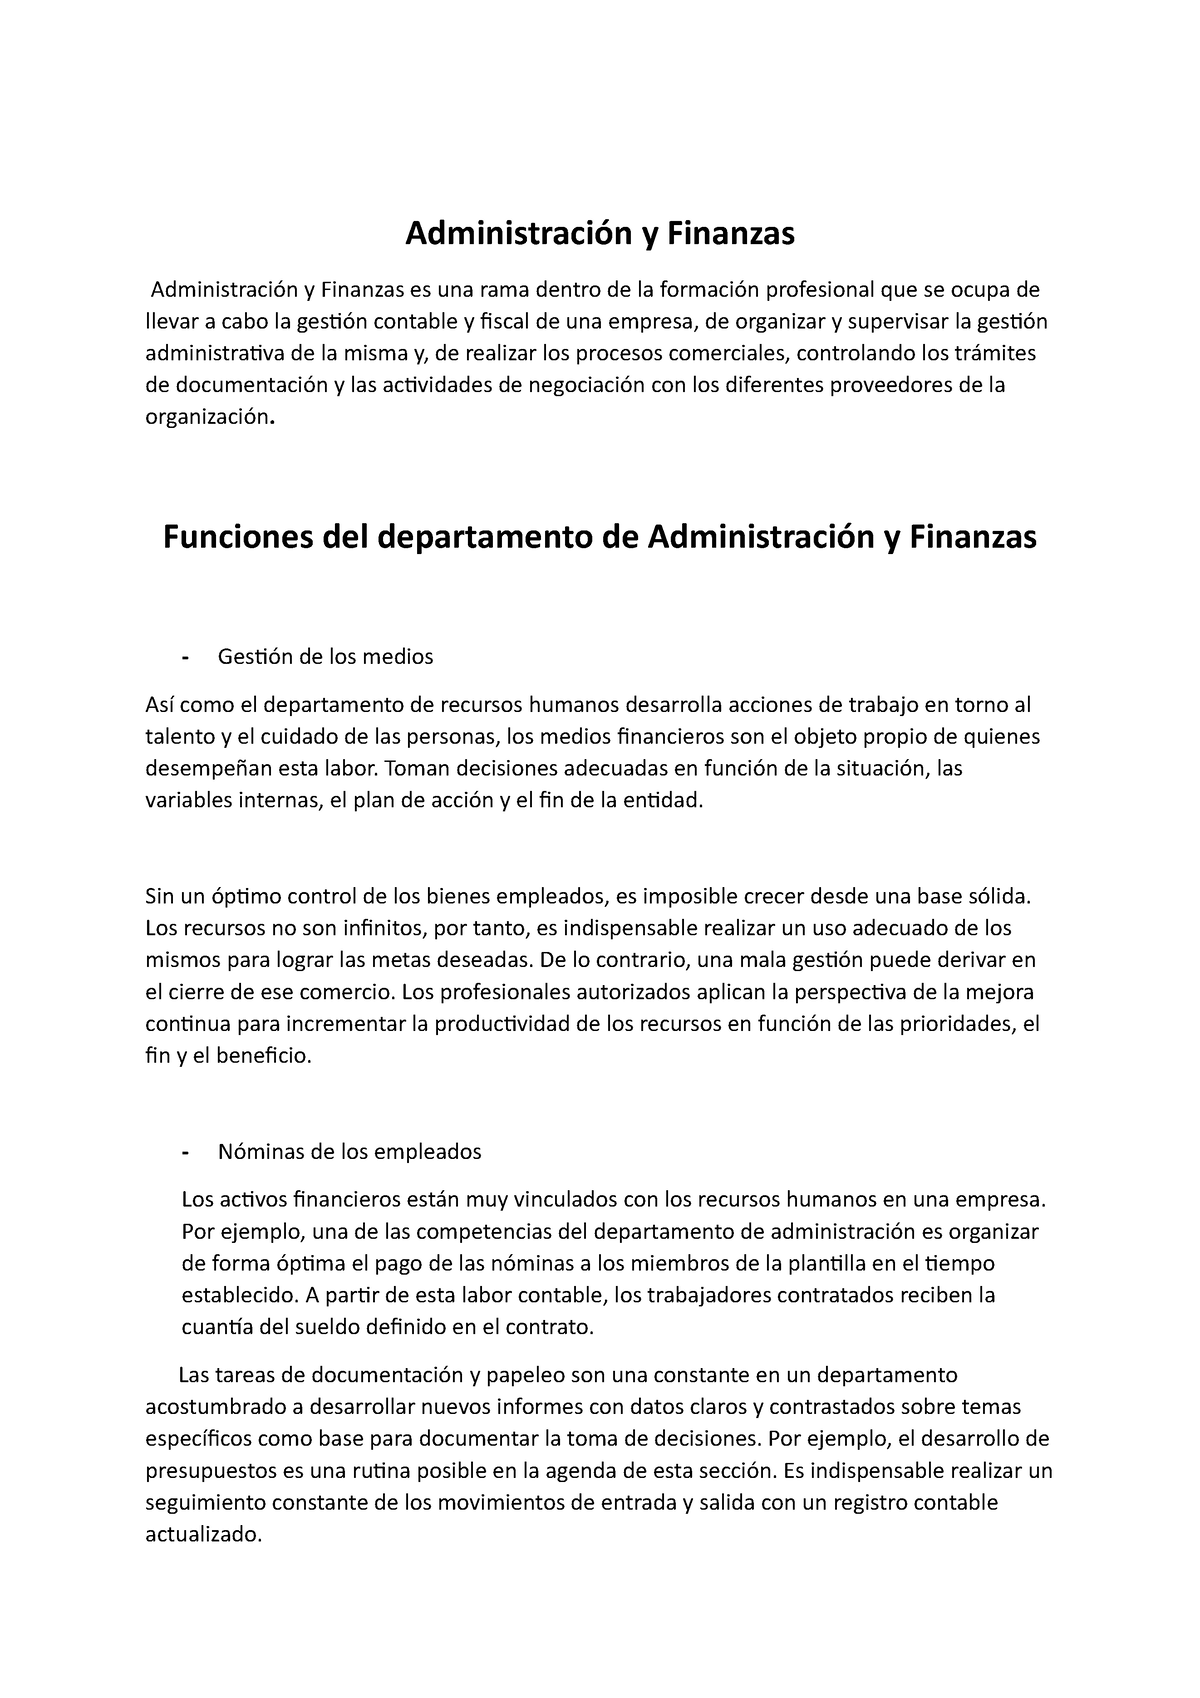 AdministraciÓn Y Finanzas Administración Y Finanzas Administración Y Finanzas Es Una Rama 4643